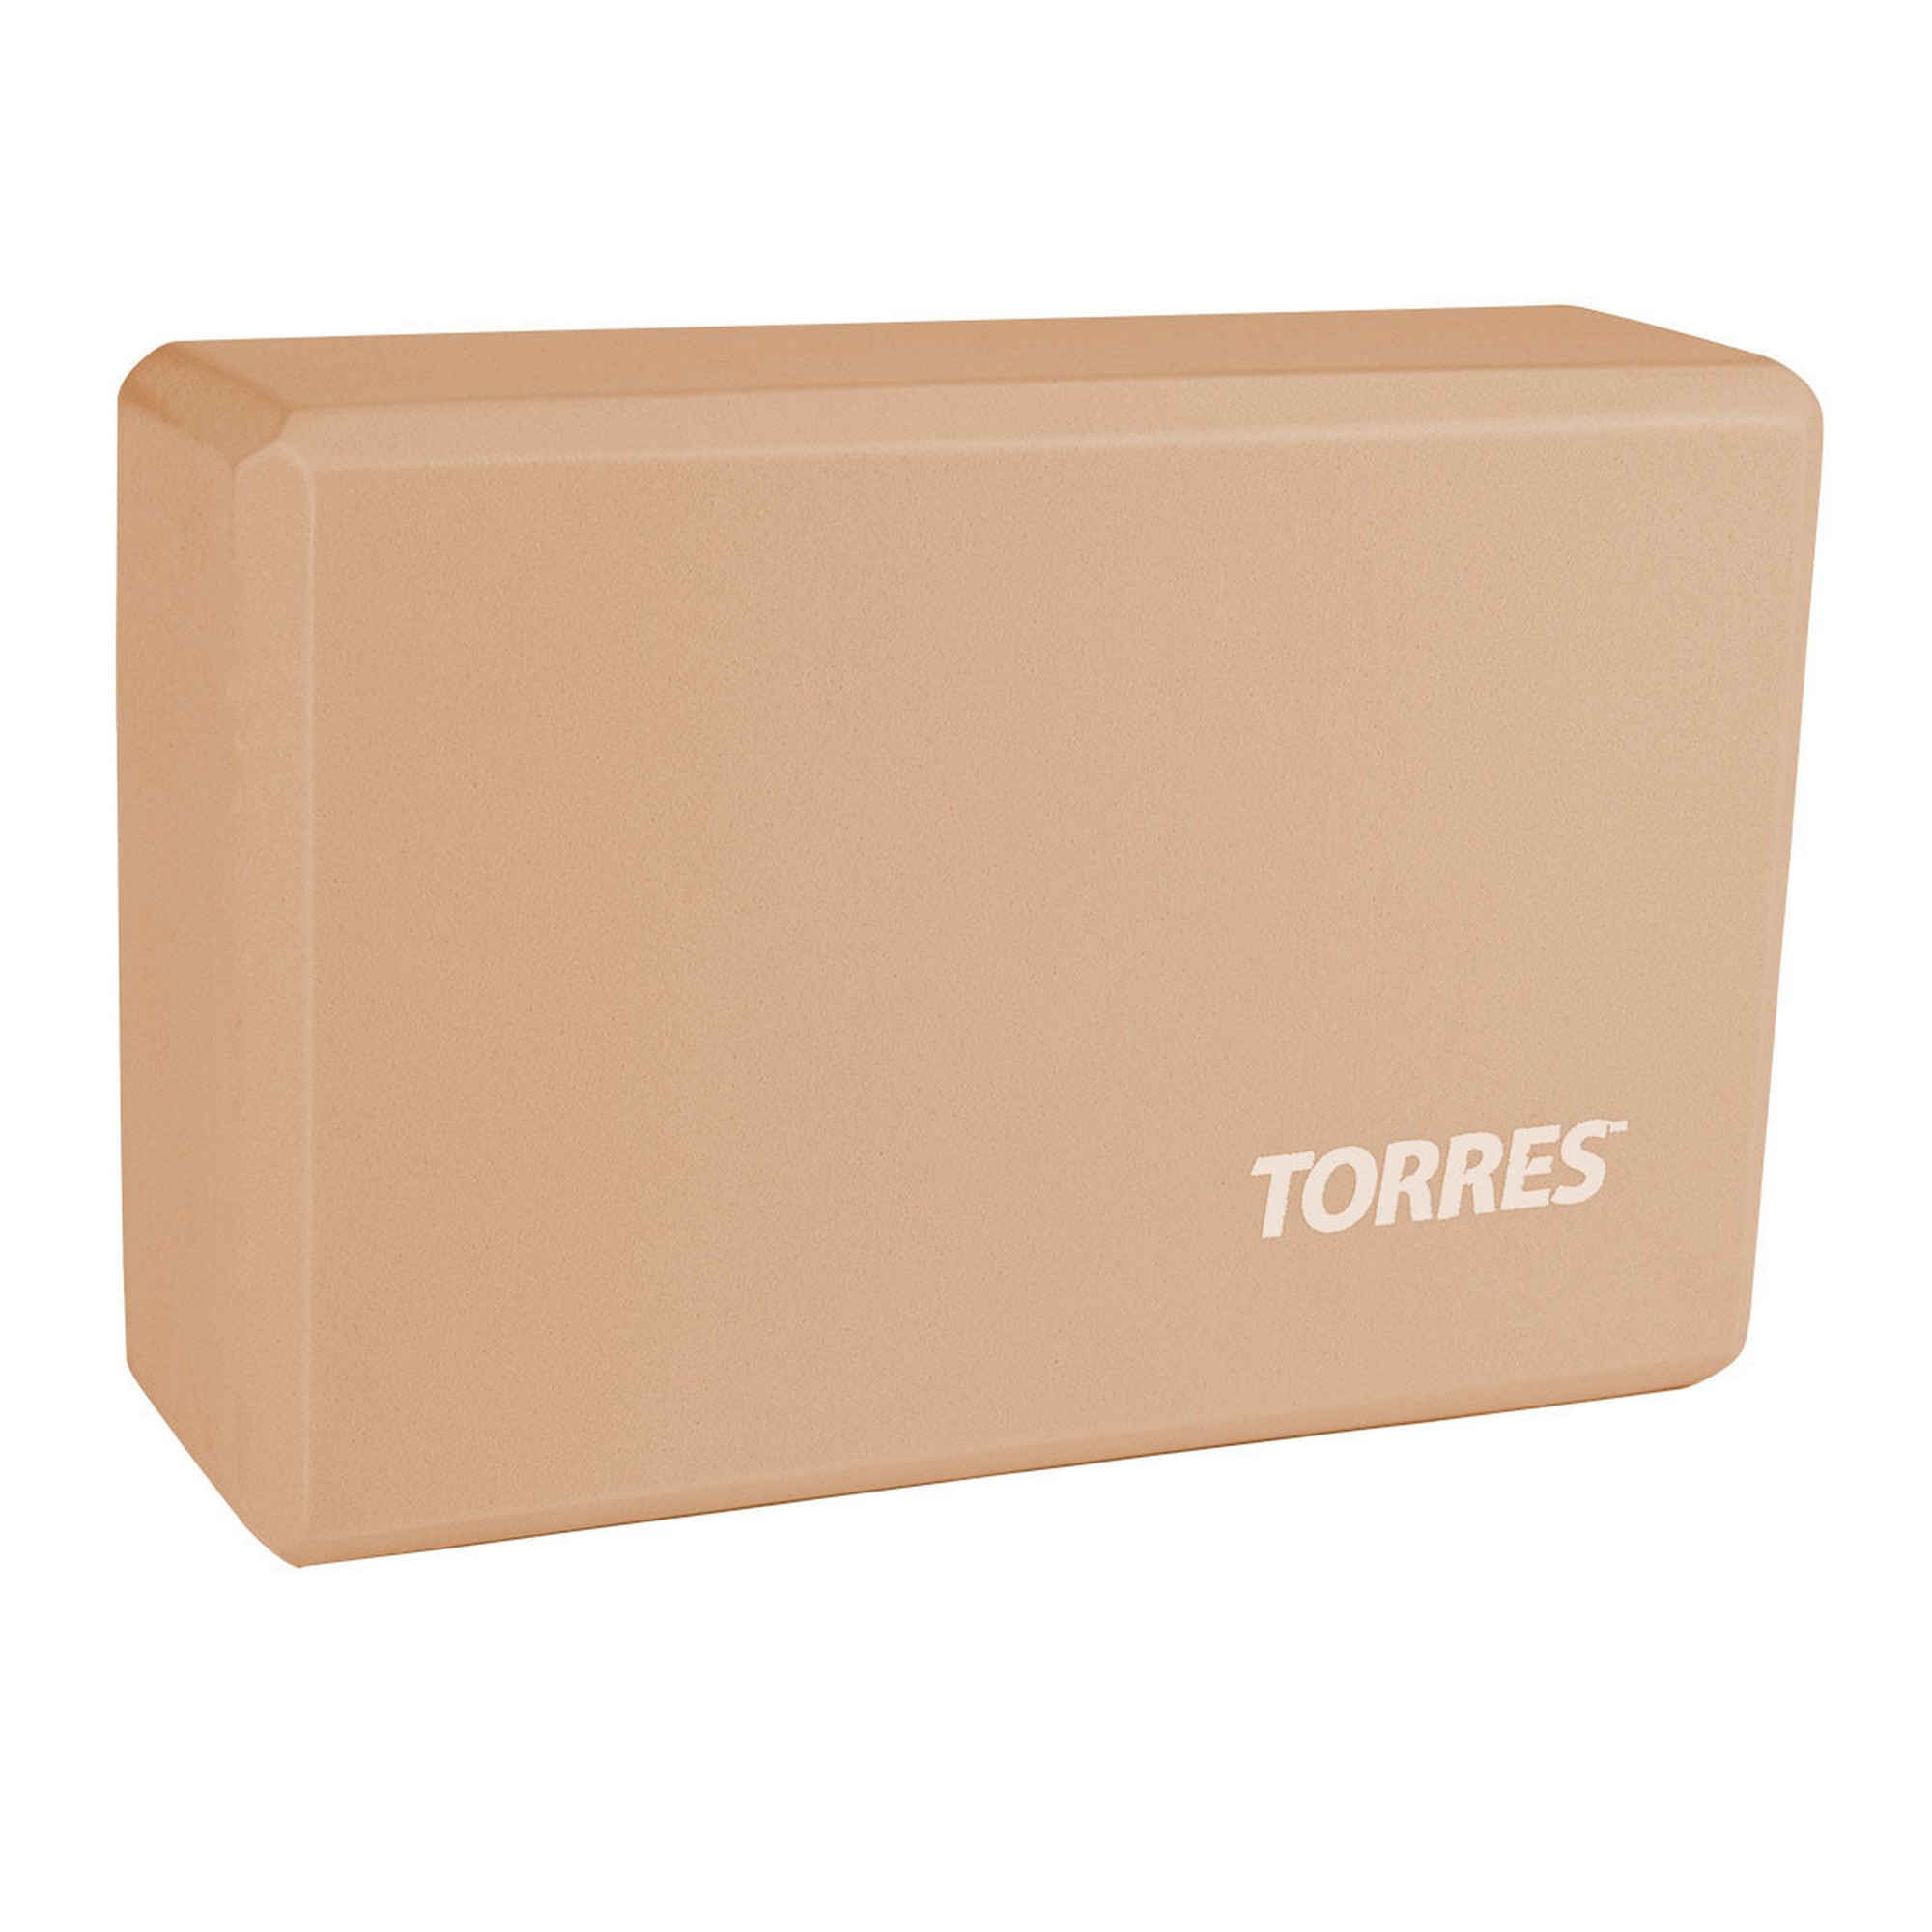 Блок для йоги Torres материал ЭВА, 8x15x23 см YL8005P пудровый - фото 1